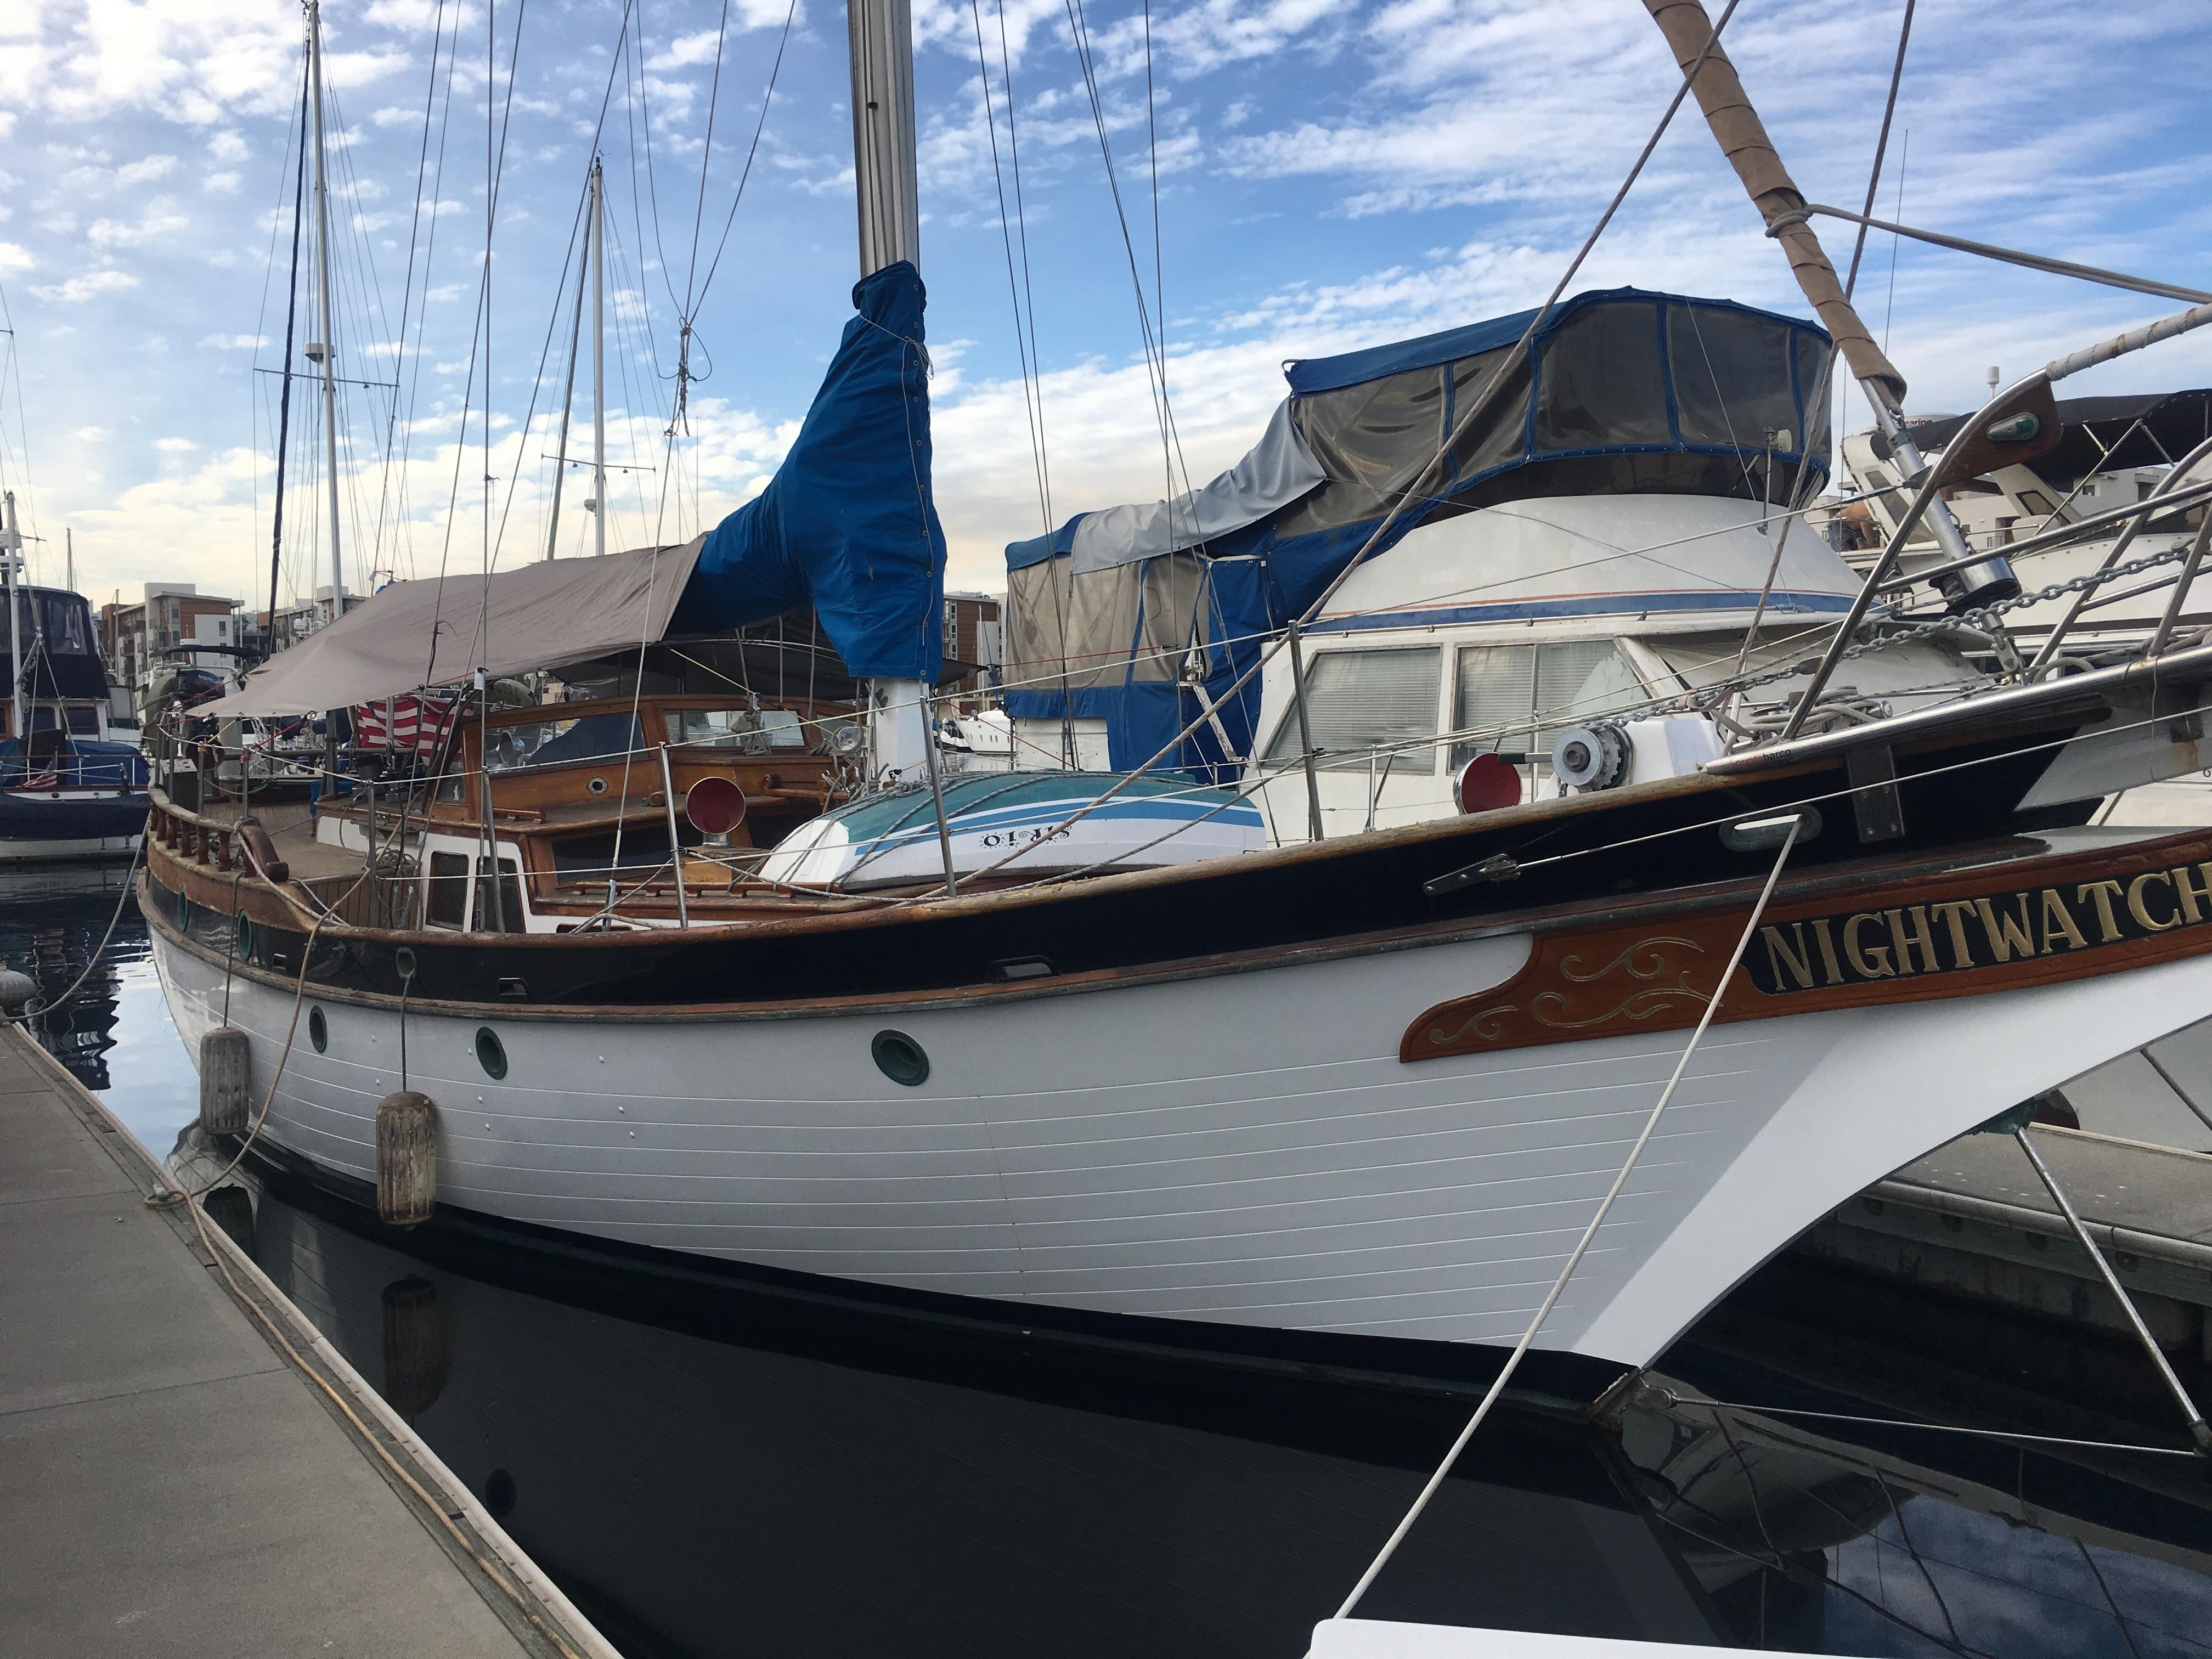 vagabond 47 yacht for sale